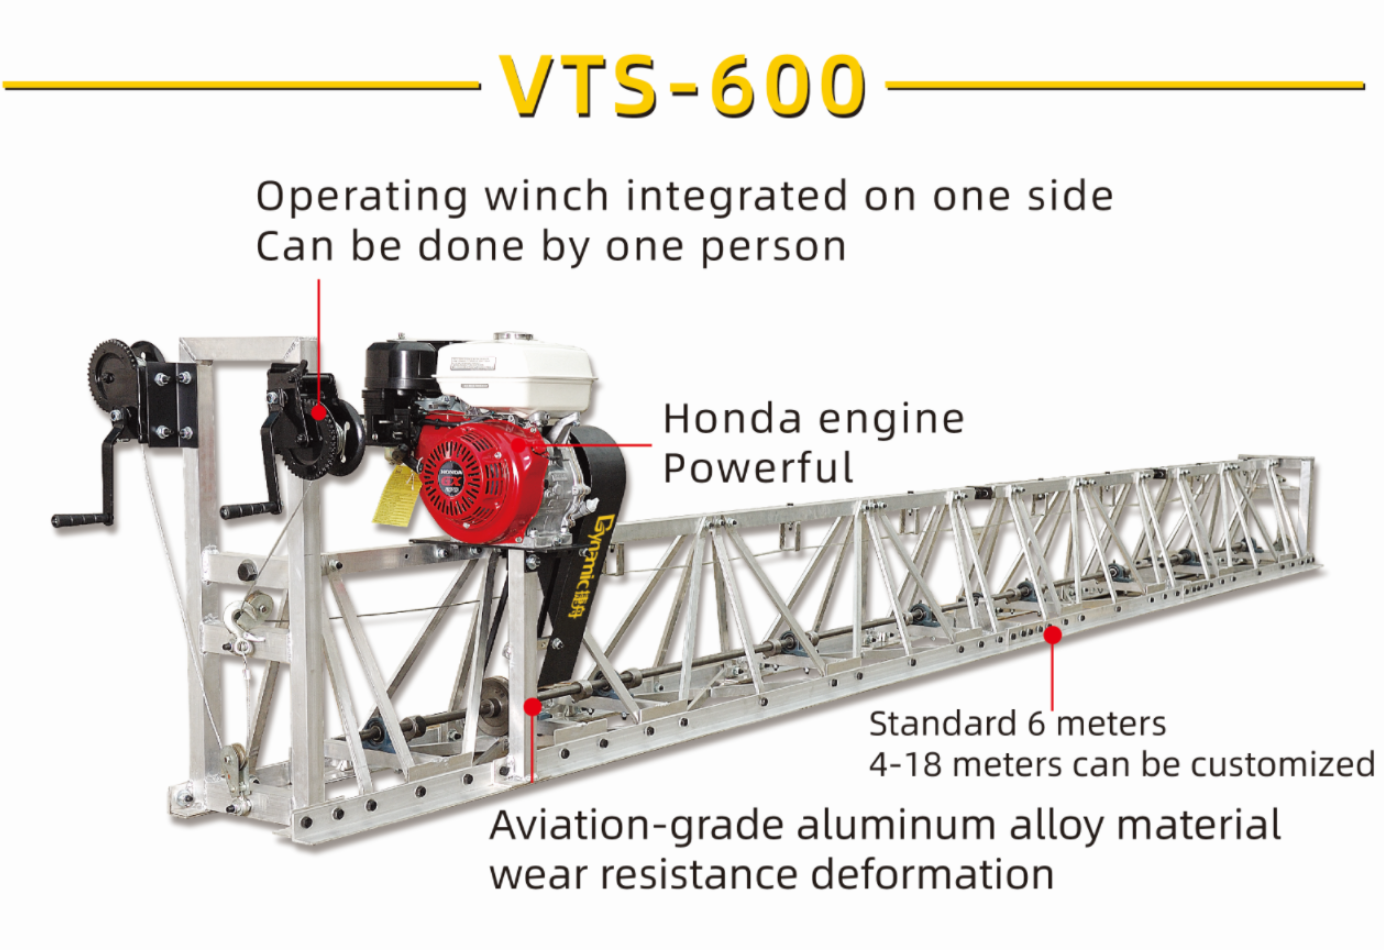 VTS-600 mìle